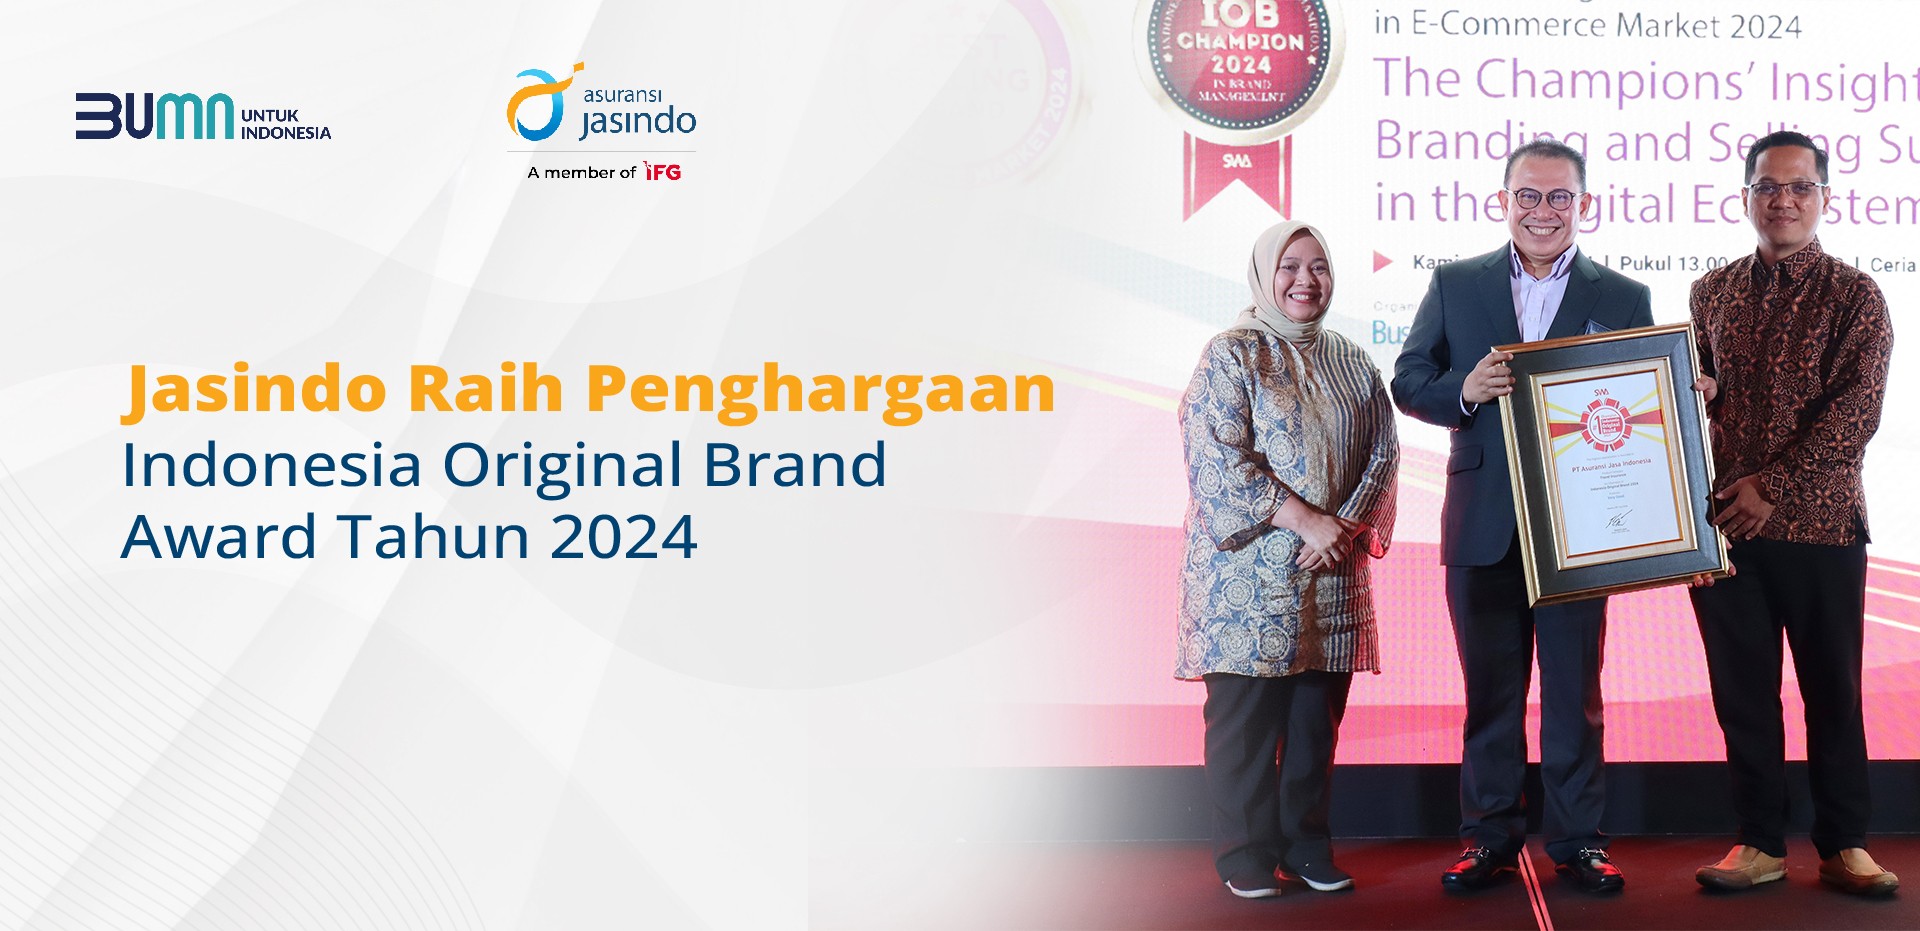 Jasindo Raih Penghargaan Indonesia Original Brand Award Tahun 2024